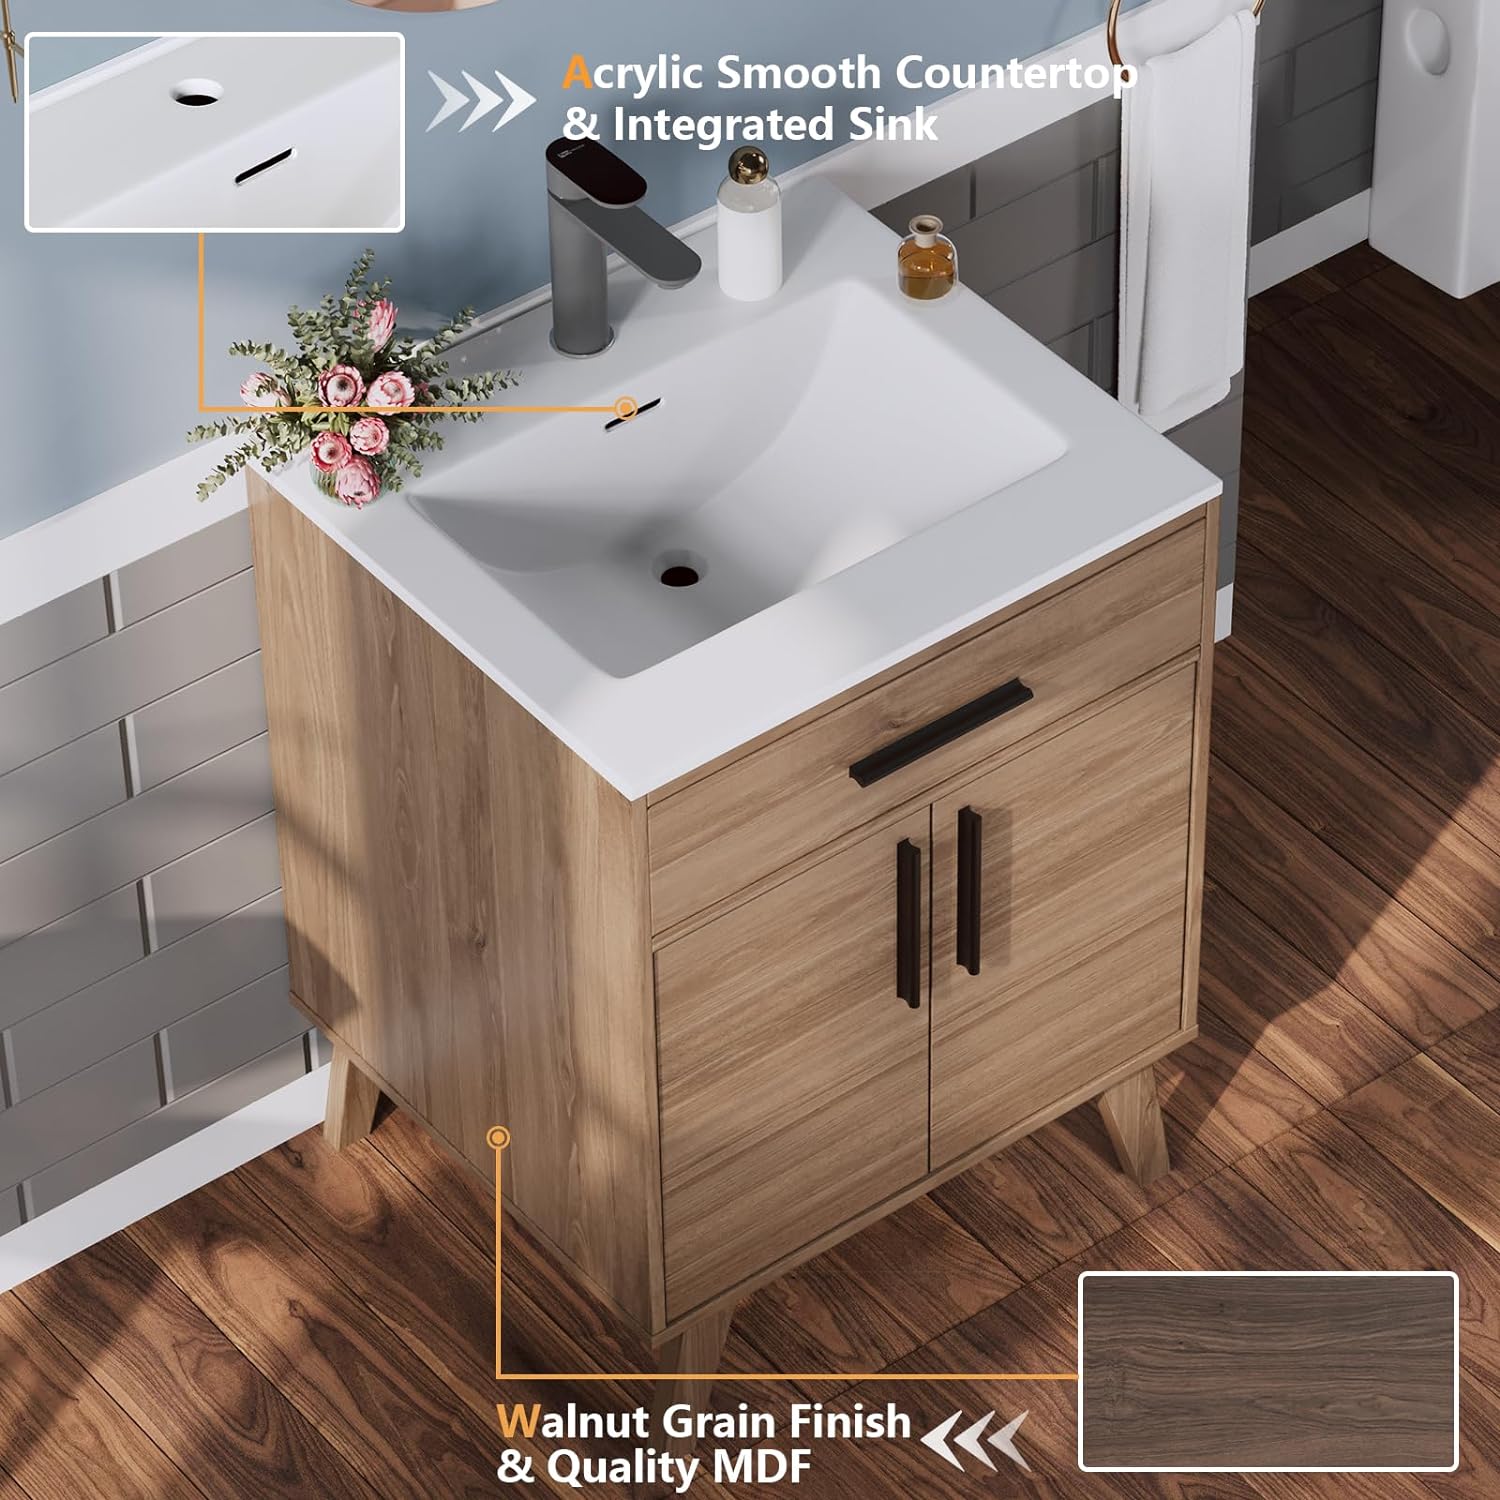 AMERLIFE wood bathroom vanity features